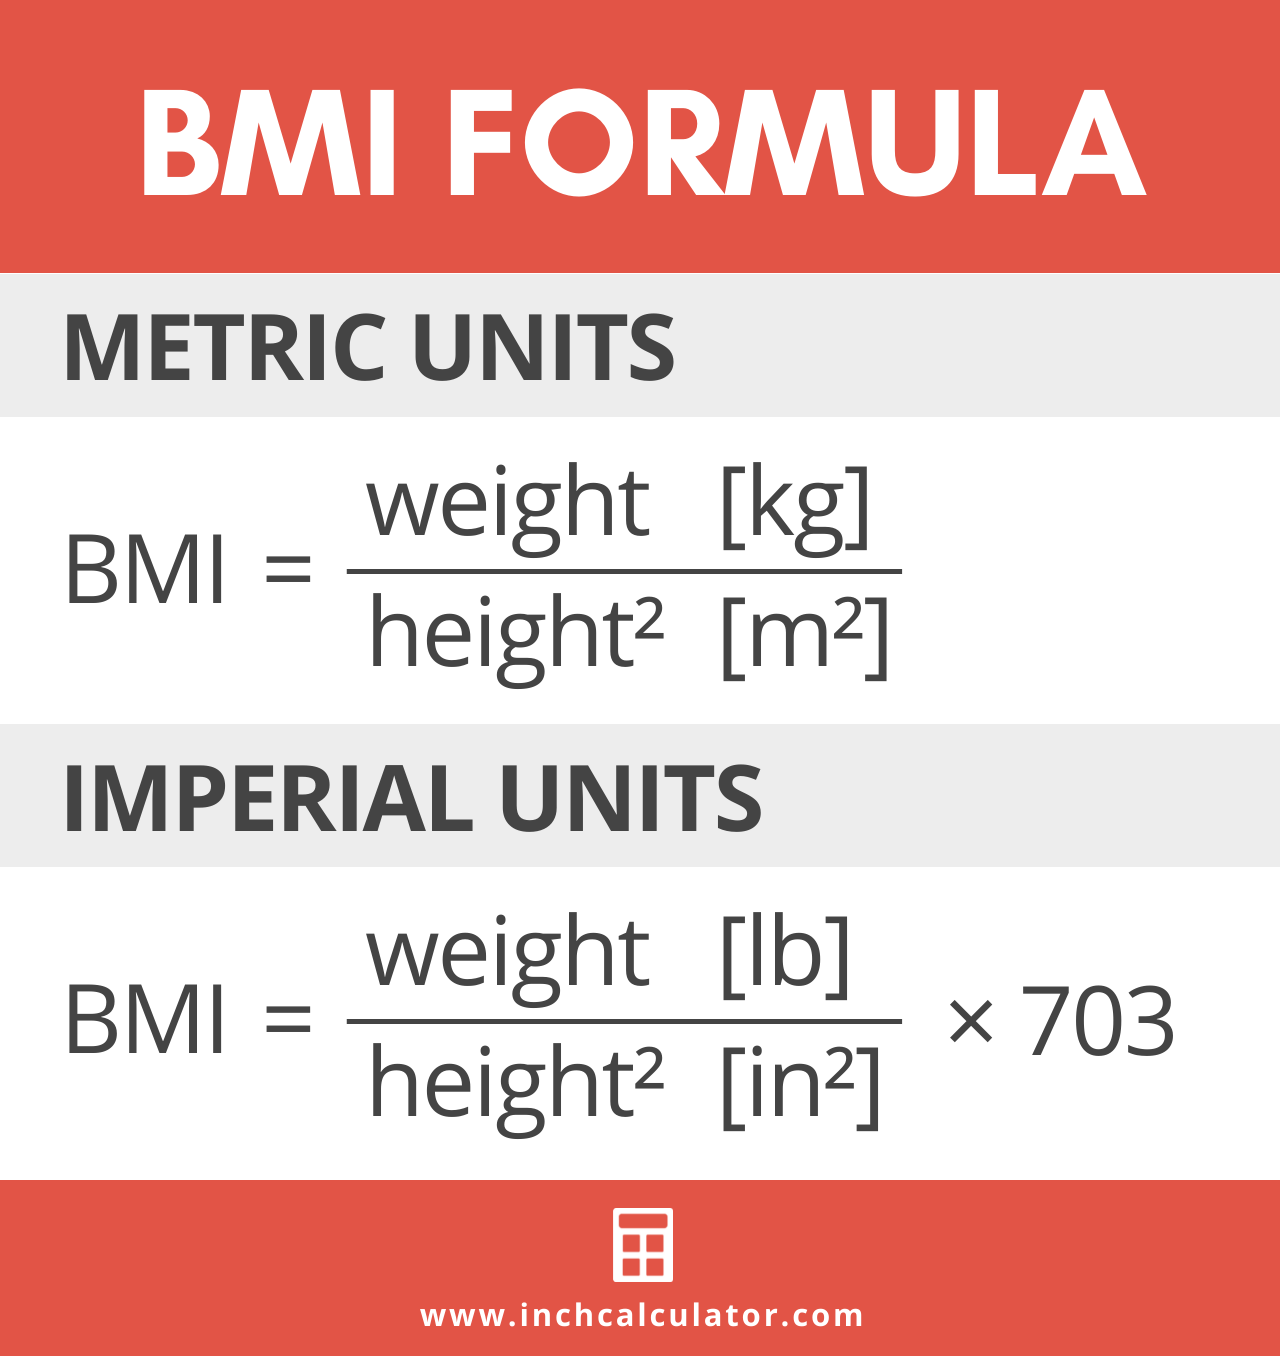 Bmi formula